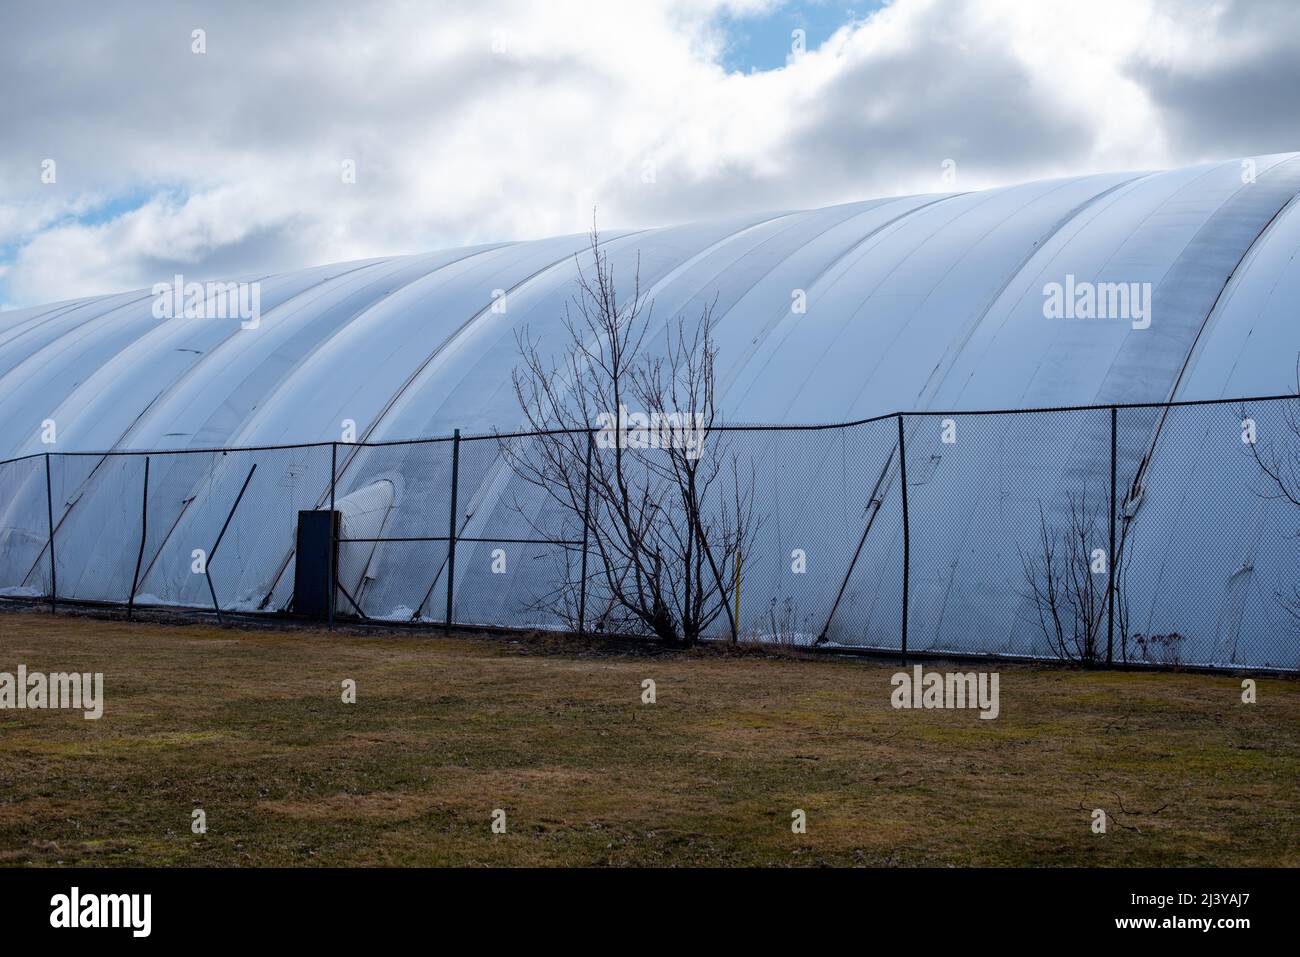 L'esterno di una tenda a cupola del campo da tennis al coperto semi permanente di colore bianco. Il modello simmetrico in politene della bolla d'aria prefabbricata pressurizzata Foto Stock